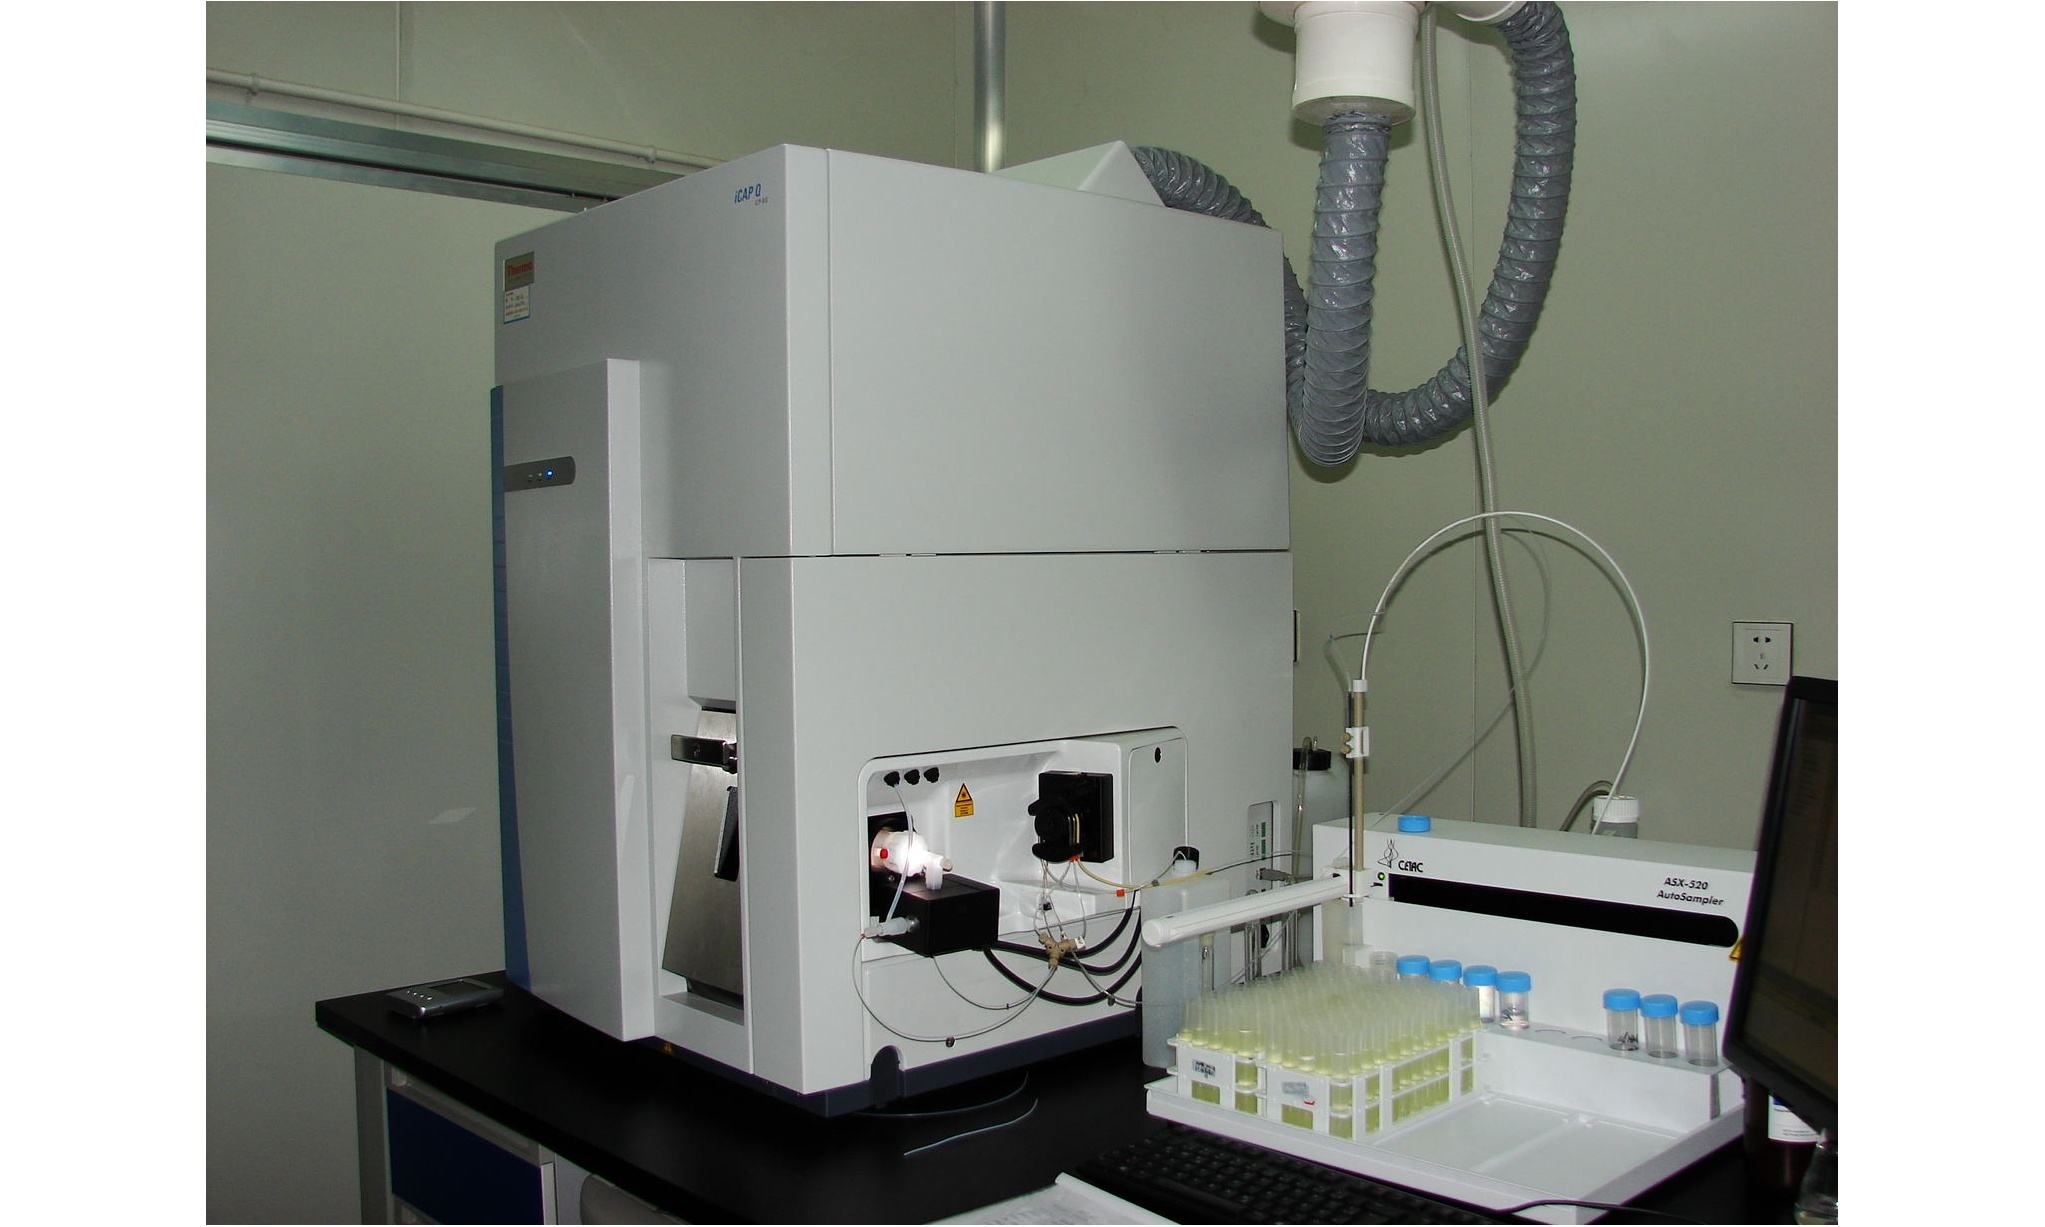 利津县检验检测中心电感耦合等离子体质谱仪等仪器设备采购项目招标